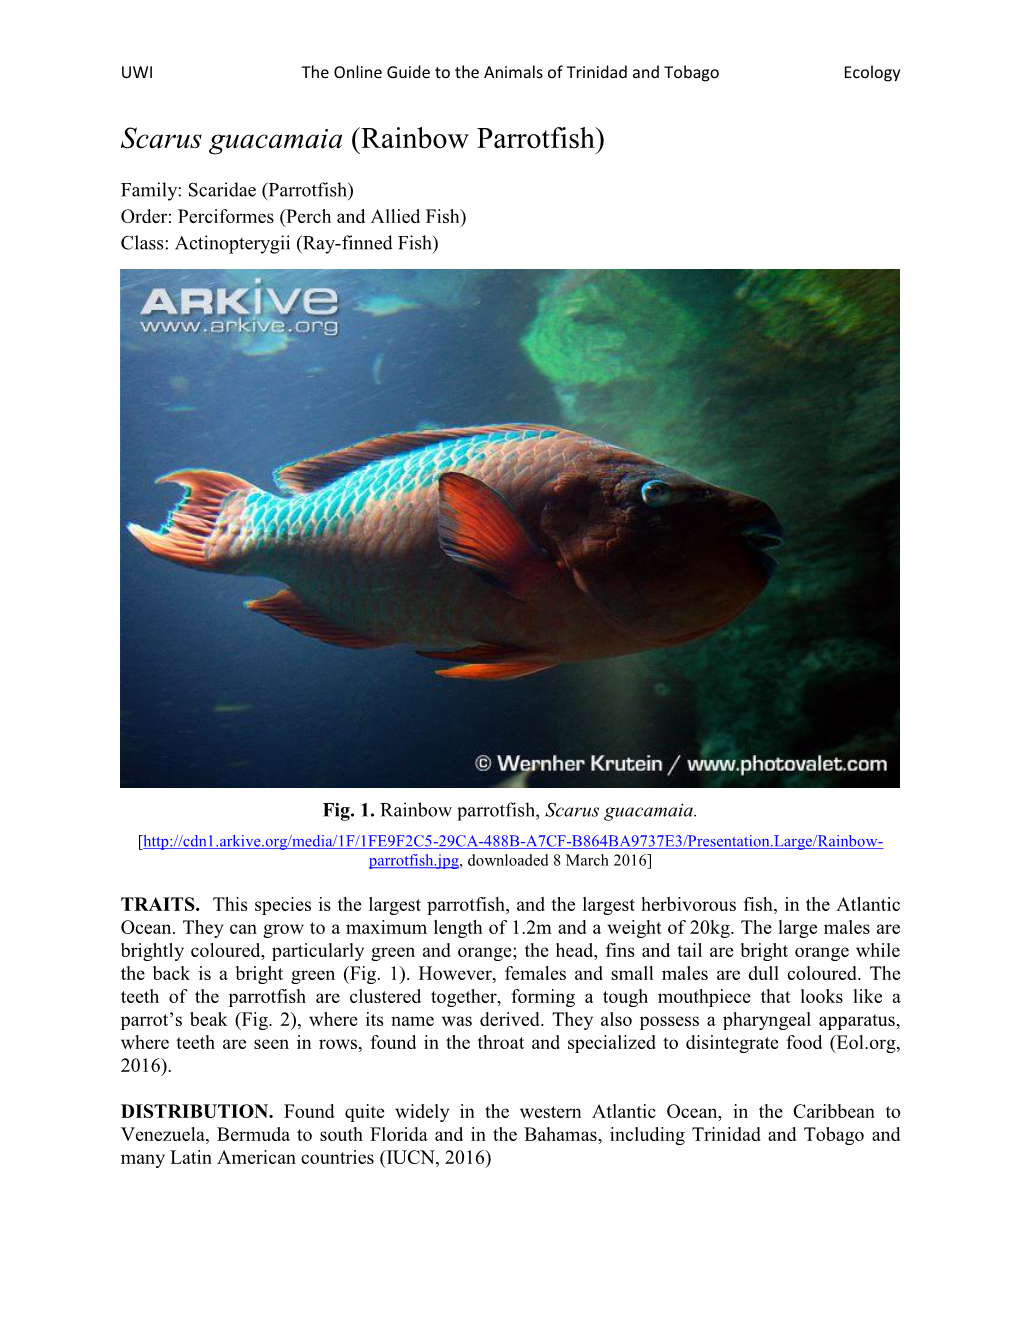 Scarus Guacamaia (Rainbow Parrotfish)